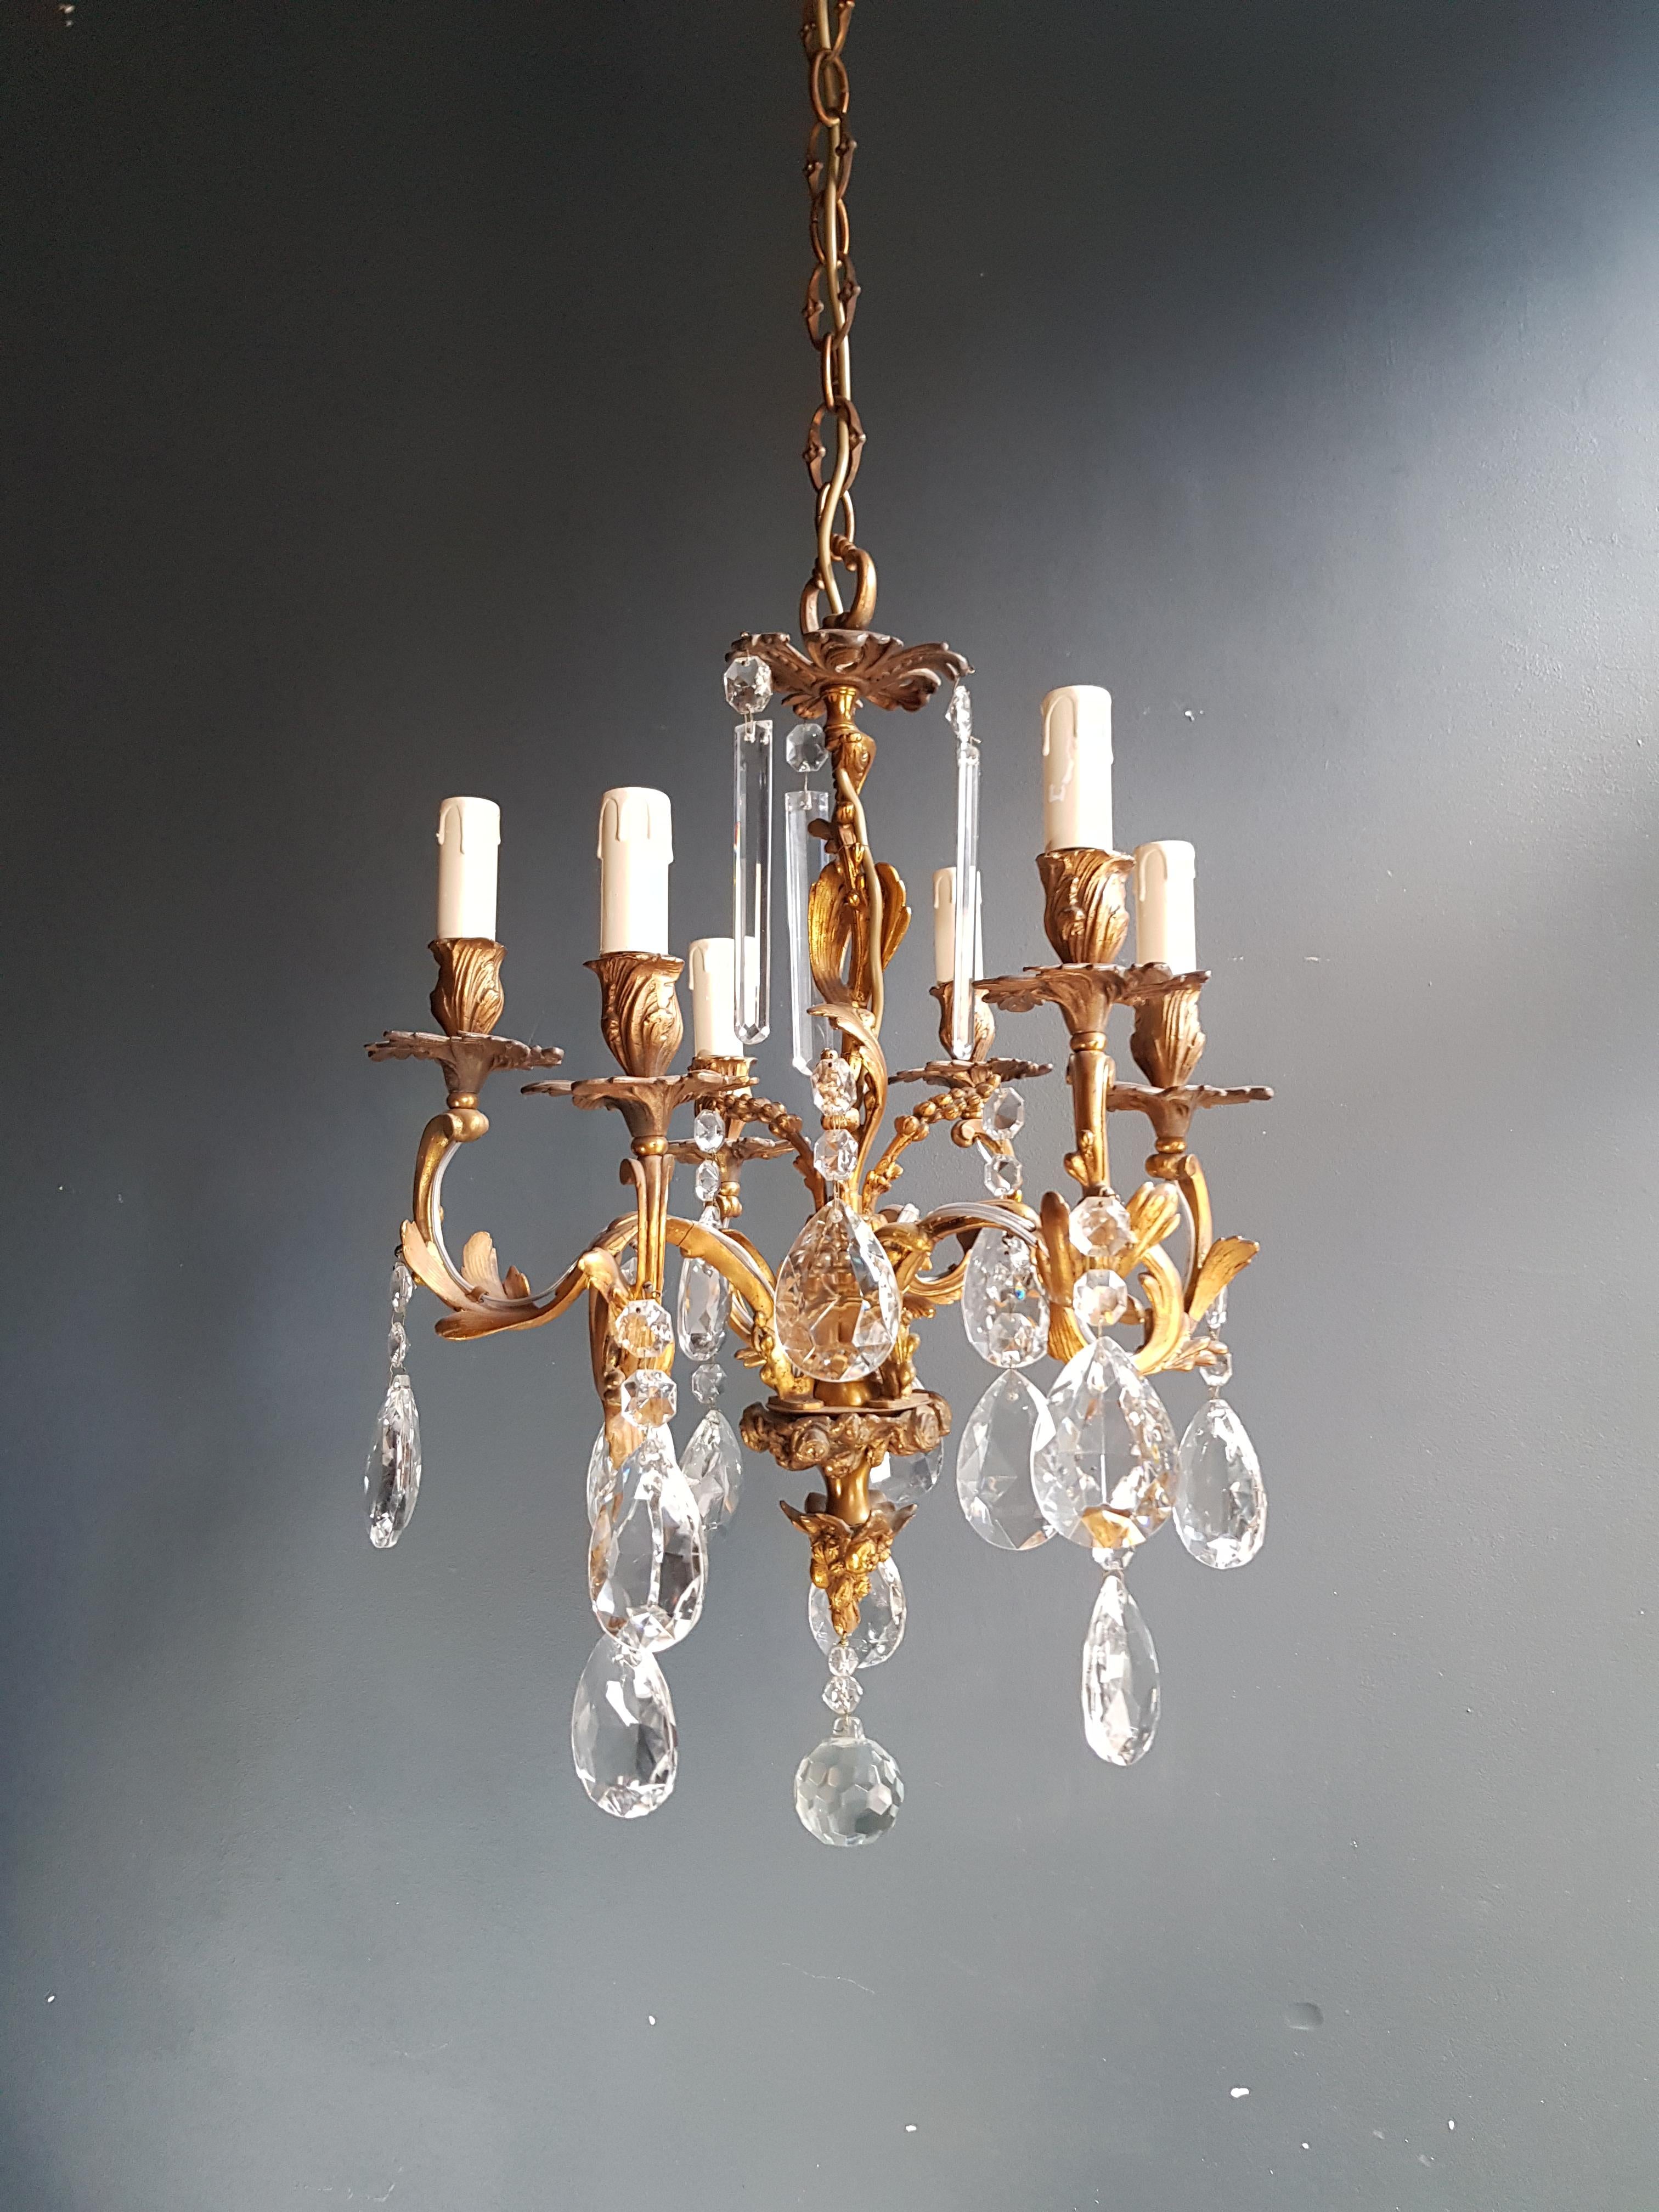 Mid-20th Century Candelabrum Chandelier Crystal Ceiling Lamp Antique Art Nouveau Pendant Lighting